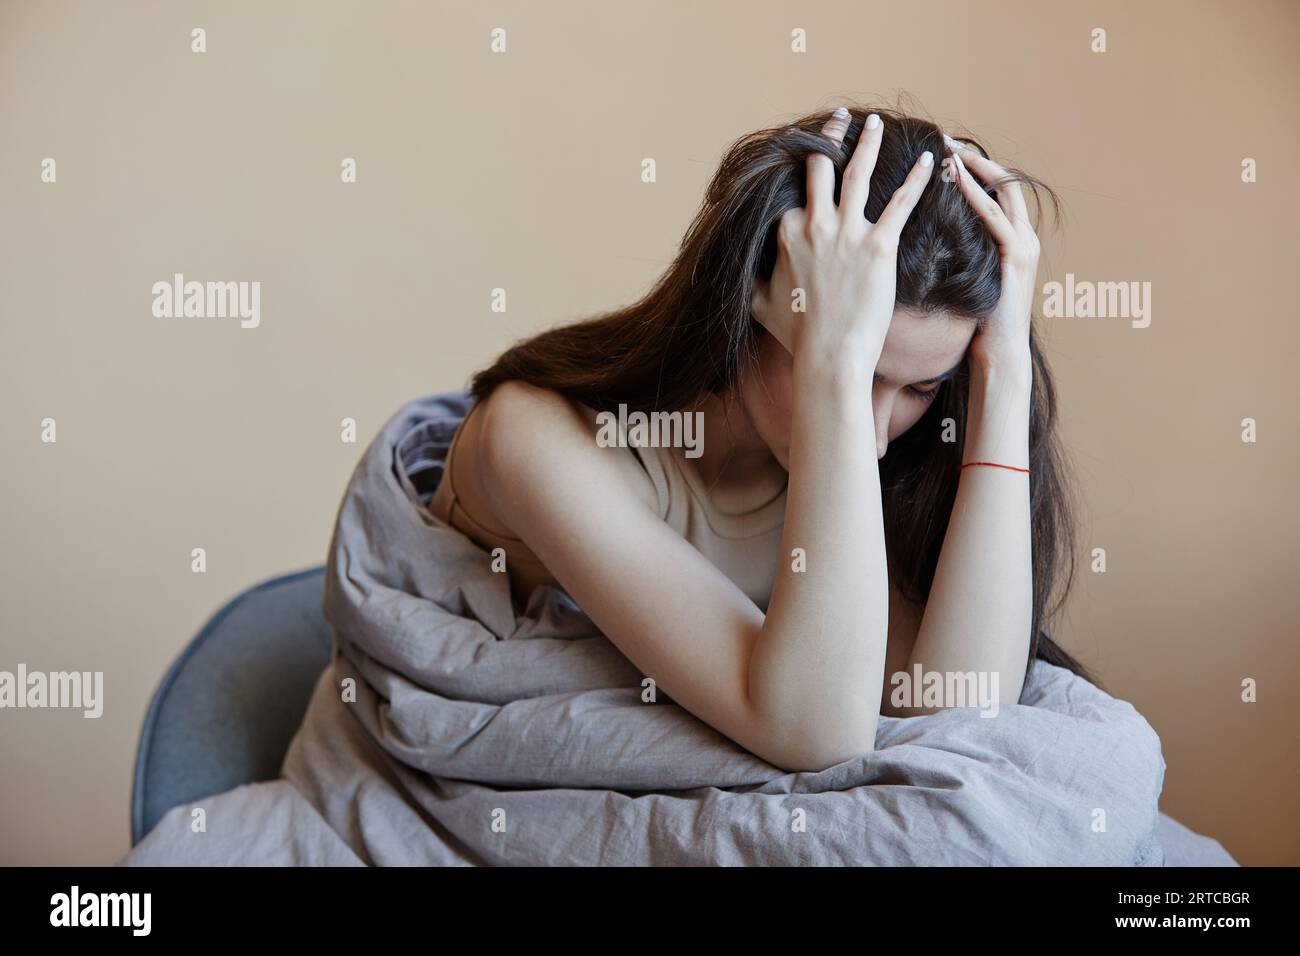 Porträt einer depressiven jungen Frau, die in eine Decke gehüllt ist, die mit psychischen Problemen zu kämpfen hat, Kopierraum Stockfoto